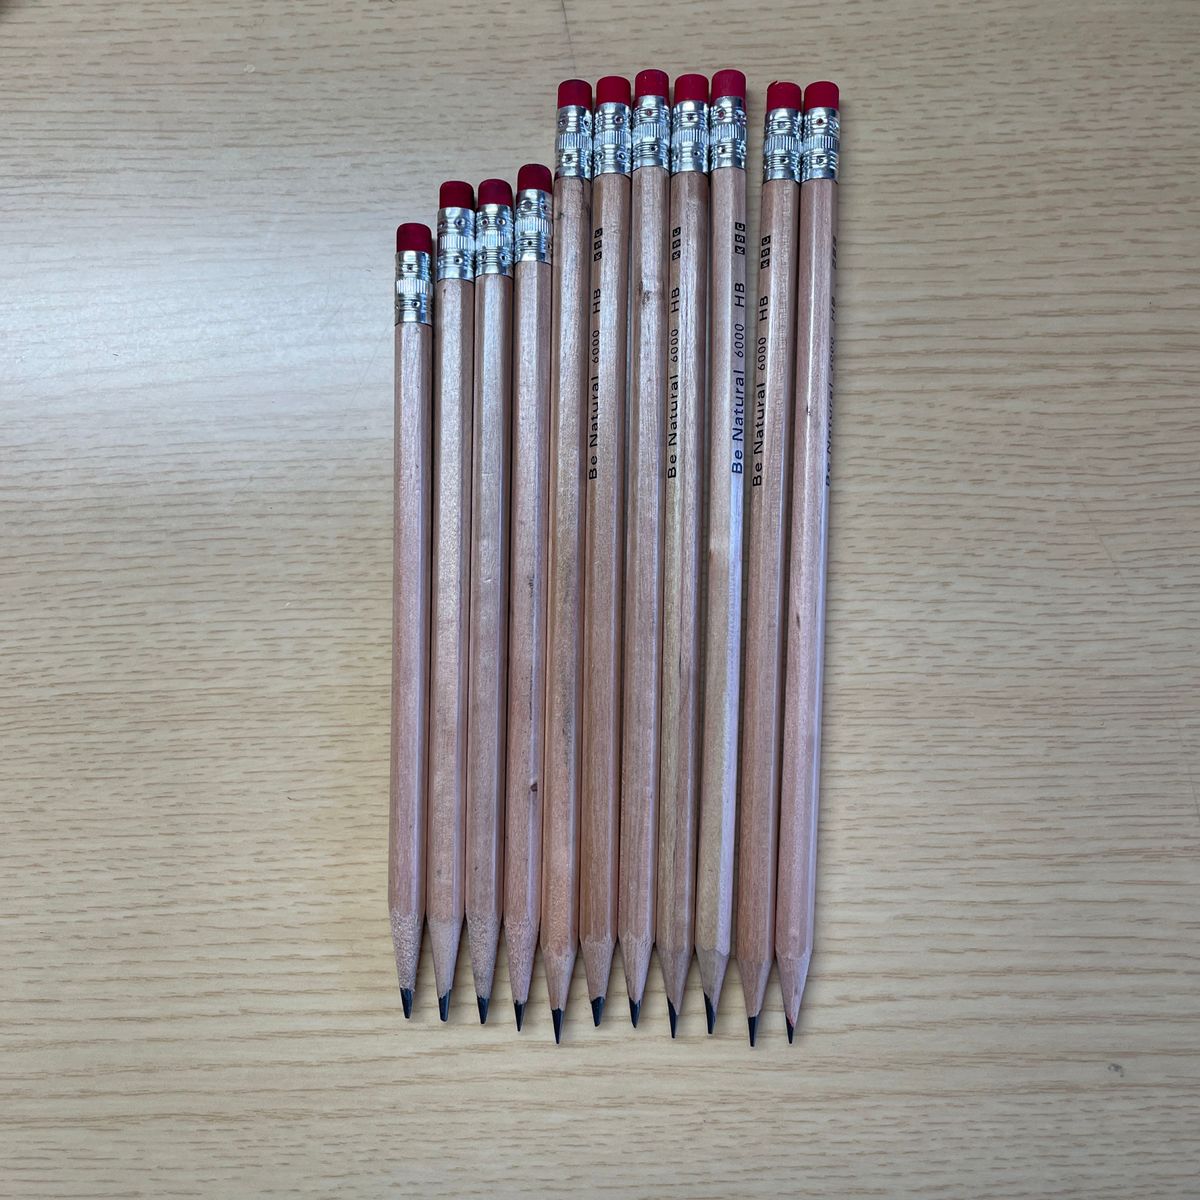 HB鉛筆11本入り4本使い済み7本新品